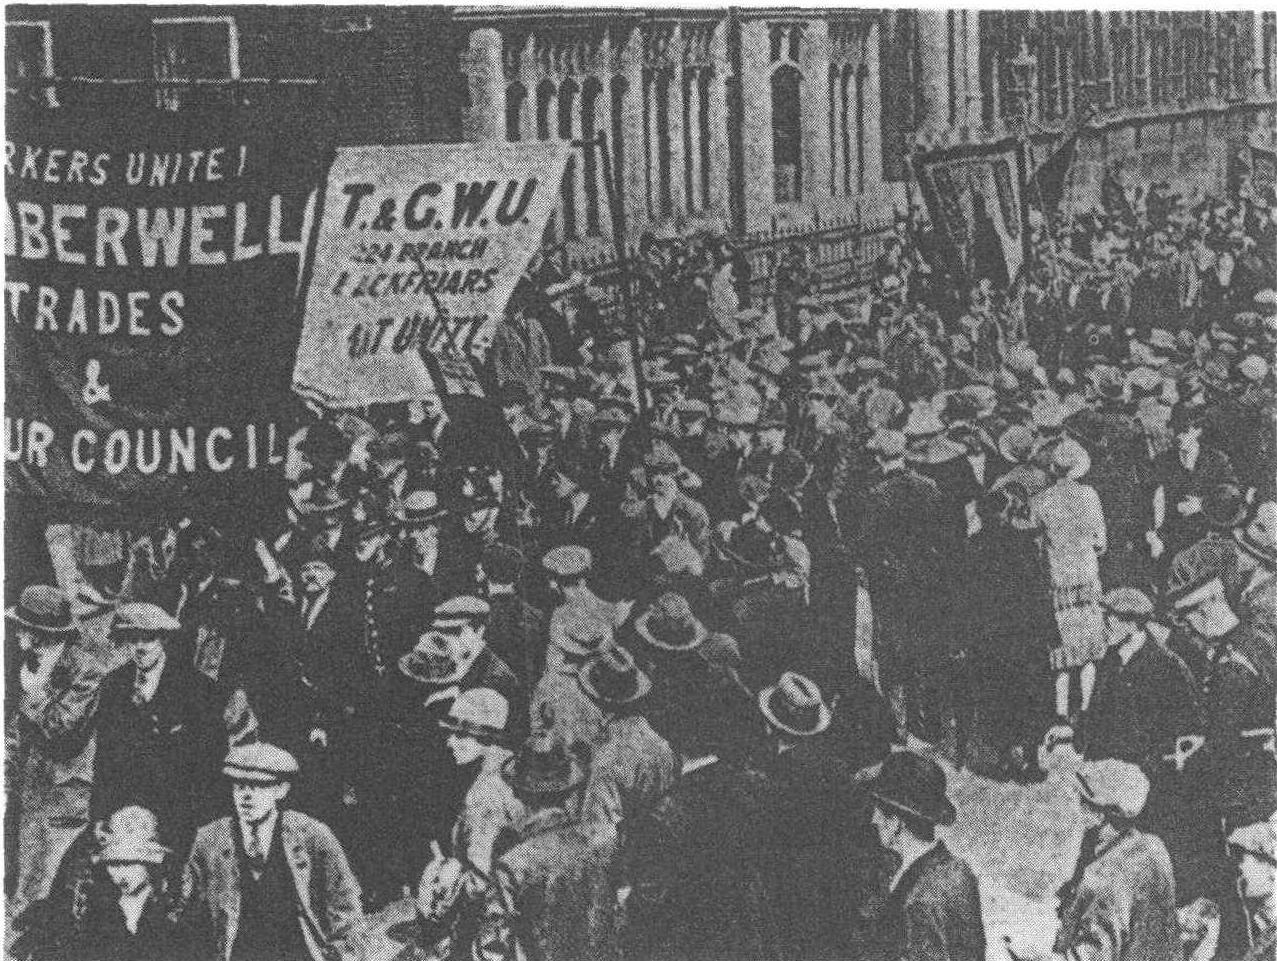 工运史上的悲壮史诗——1926年英国工人总罢工